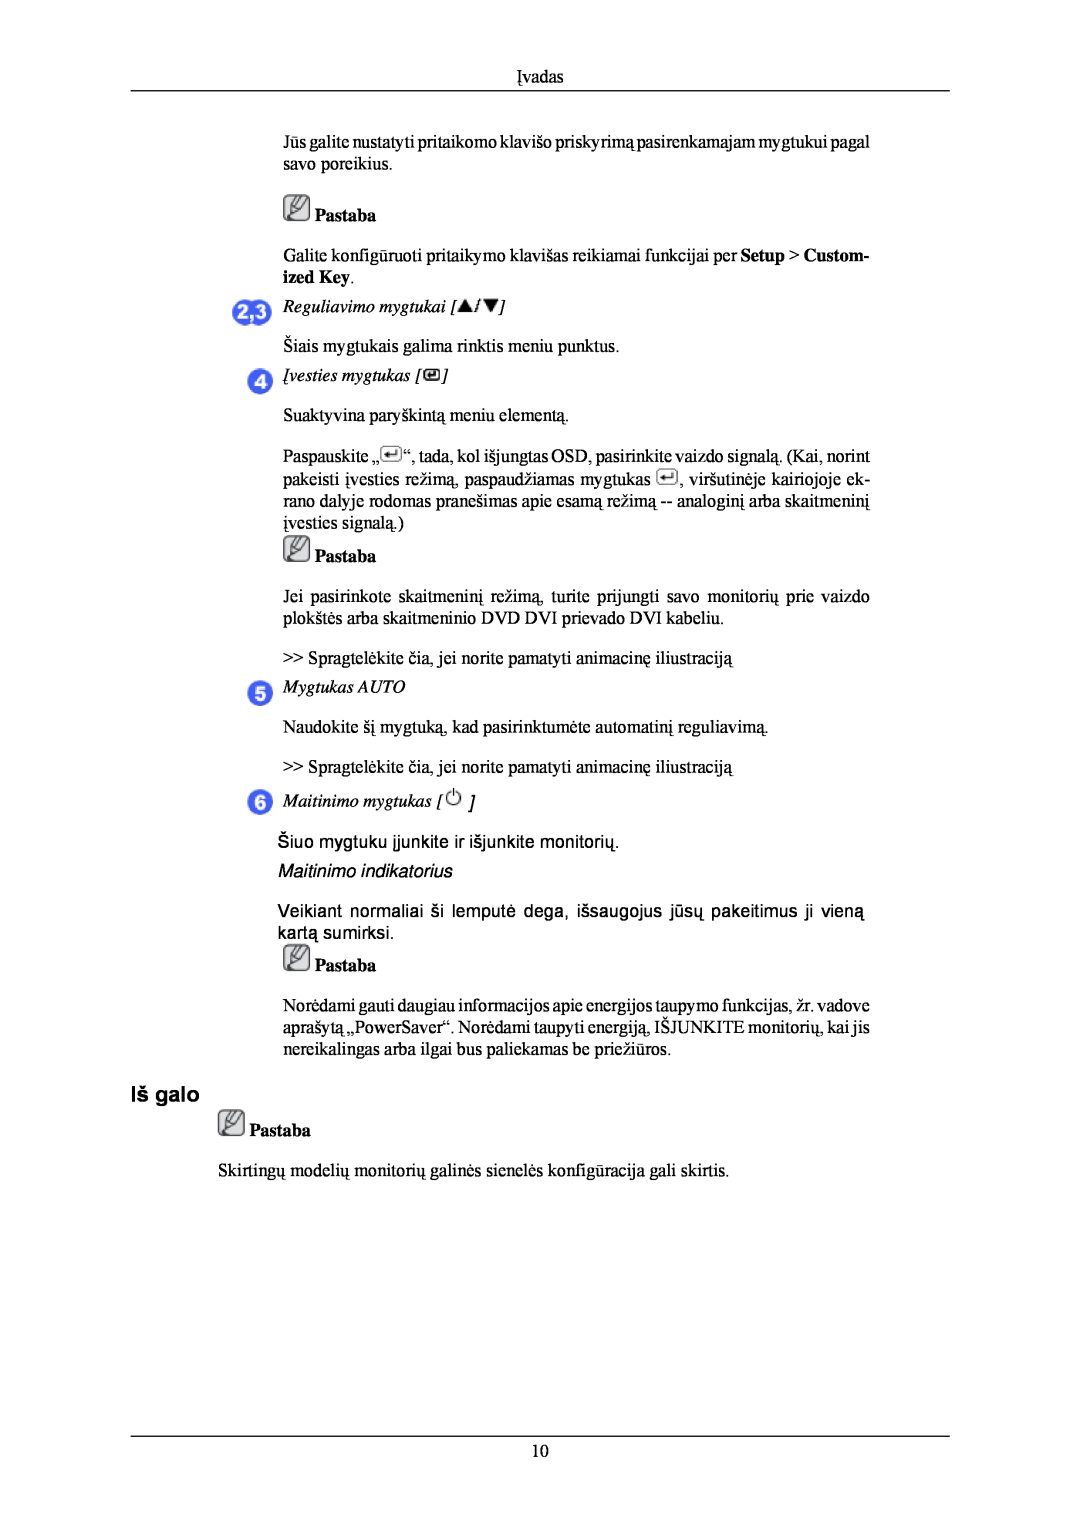 Samsung LS24CMKKFV/EN manual Iš galo, Maitinimo indikatorius, Reguliavimo mygtukai, Įvesties mygtukas, Maitinimo mygtukas 